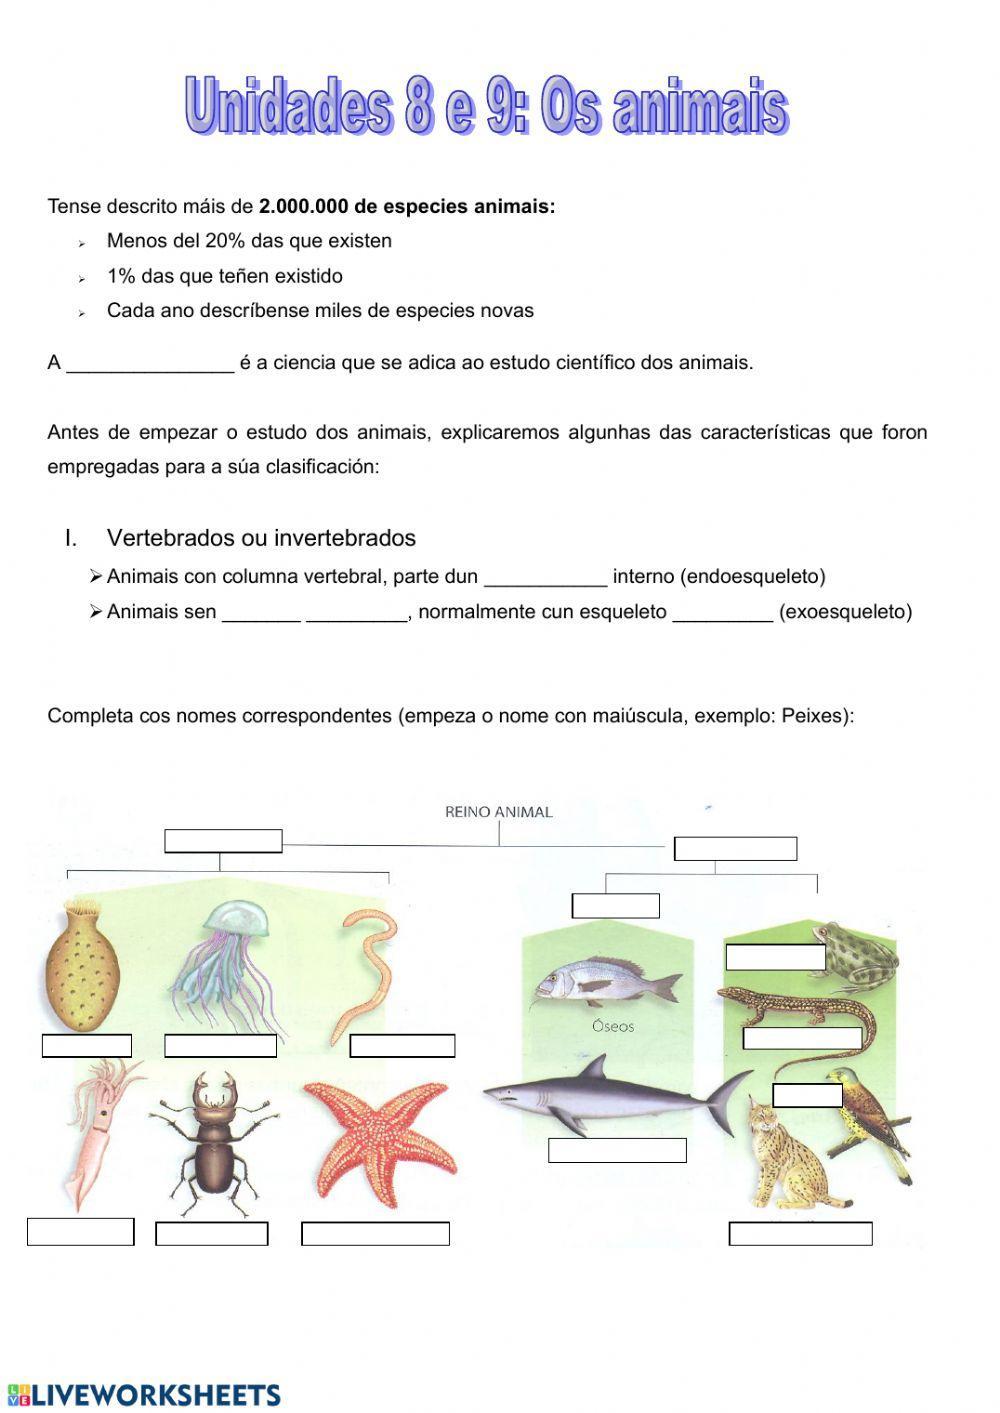 Invertebrados: poríferos, anélidos e cnidarios.